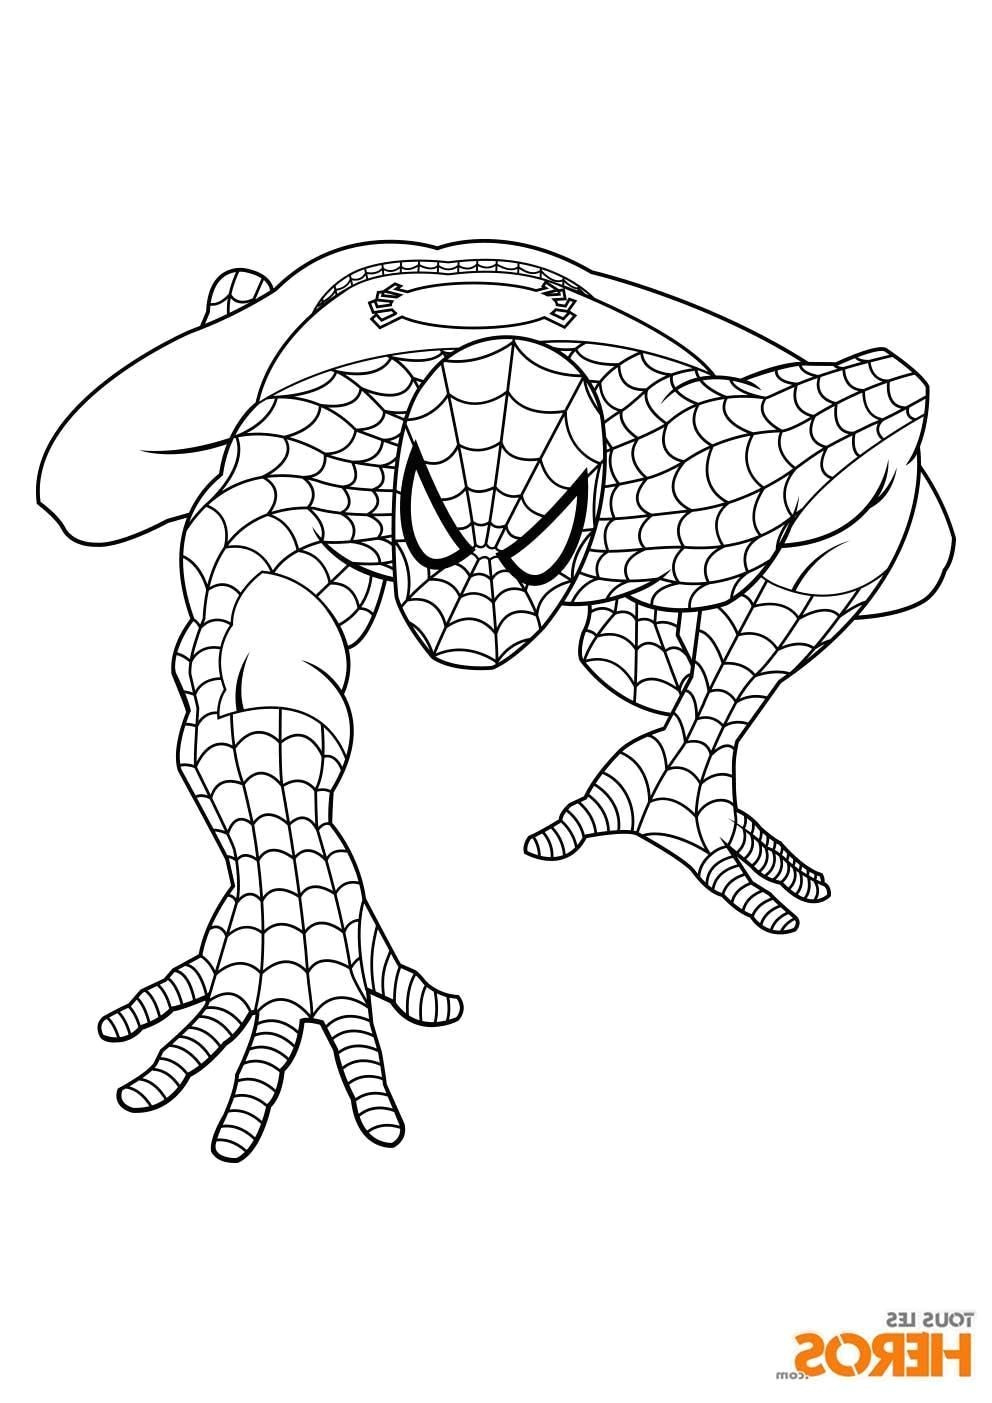 coloriage vaisseau spatial a imprimer dessus coloriage de spiderman gratuit